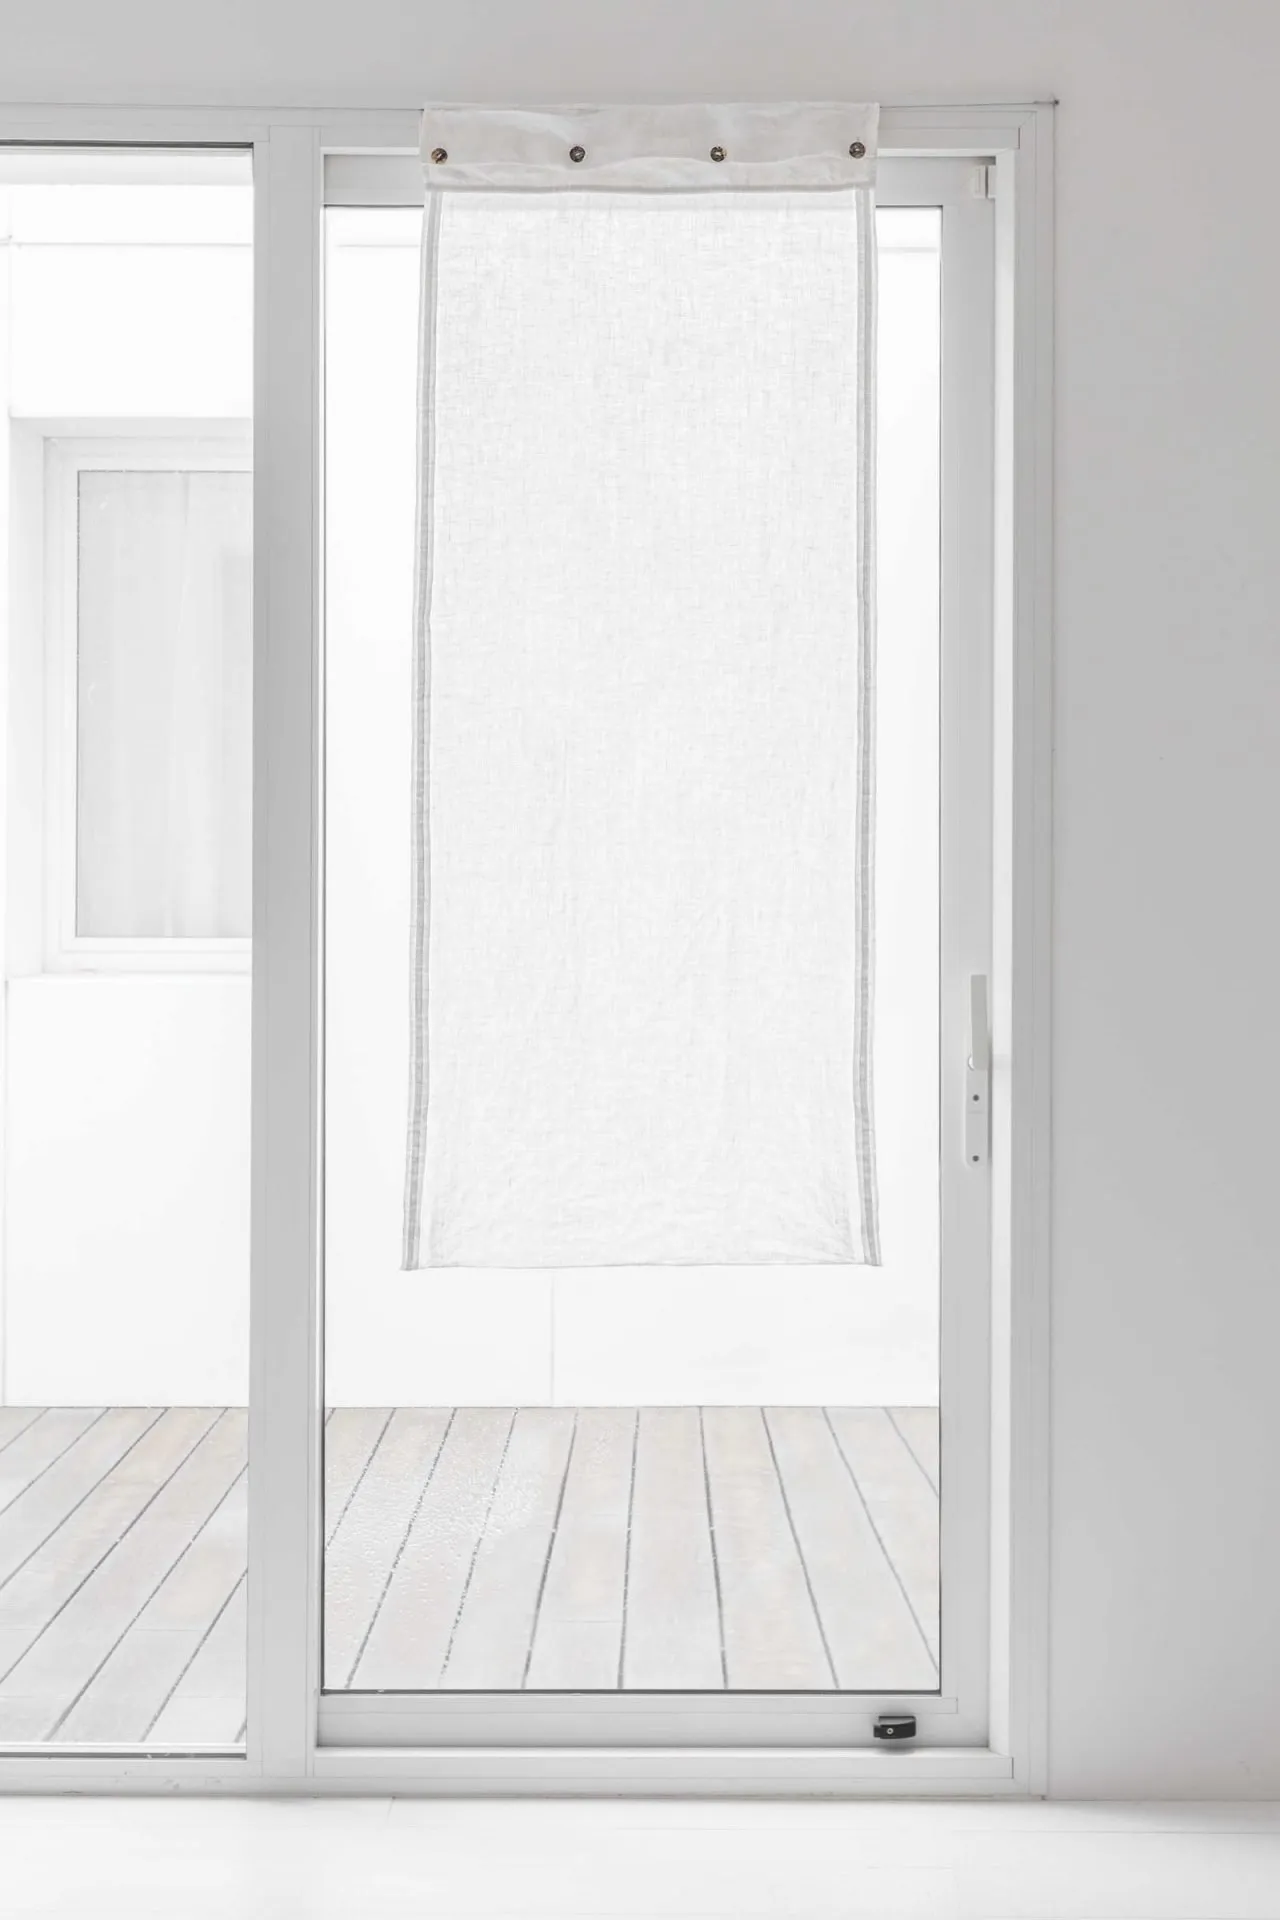 Lightweight linen glass curtain